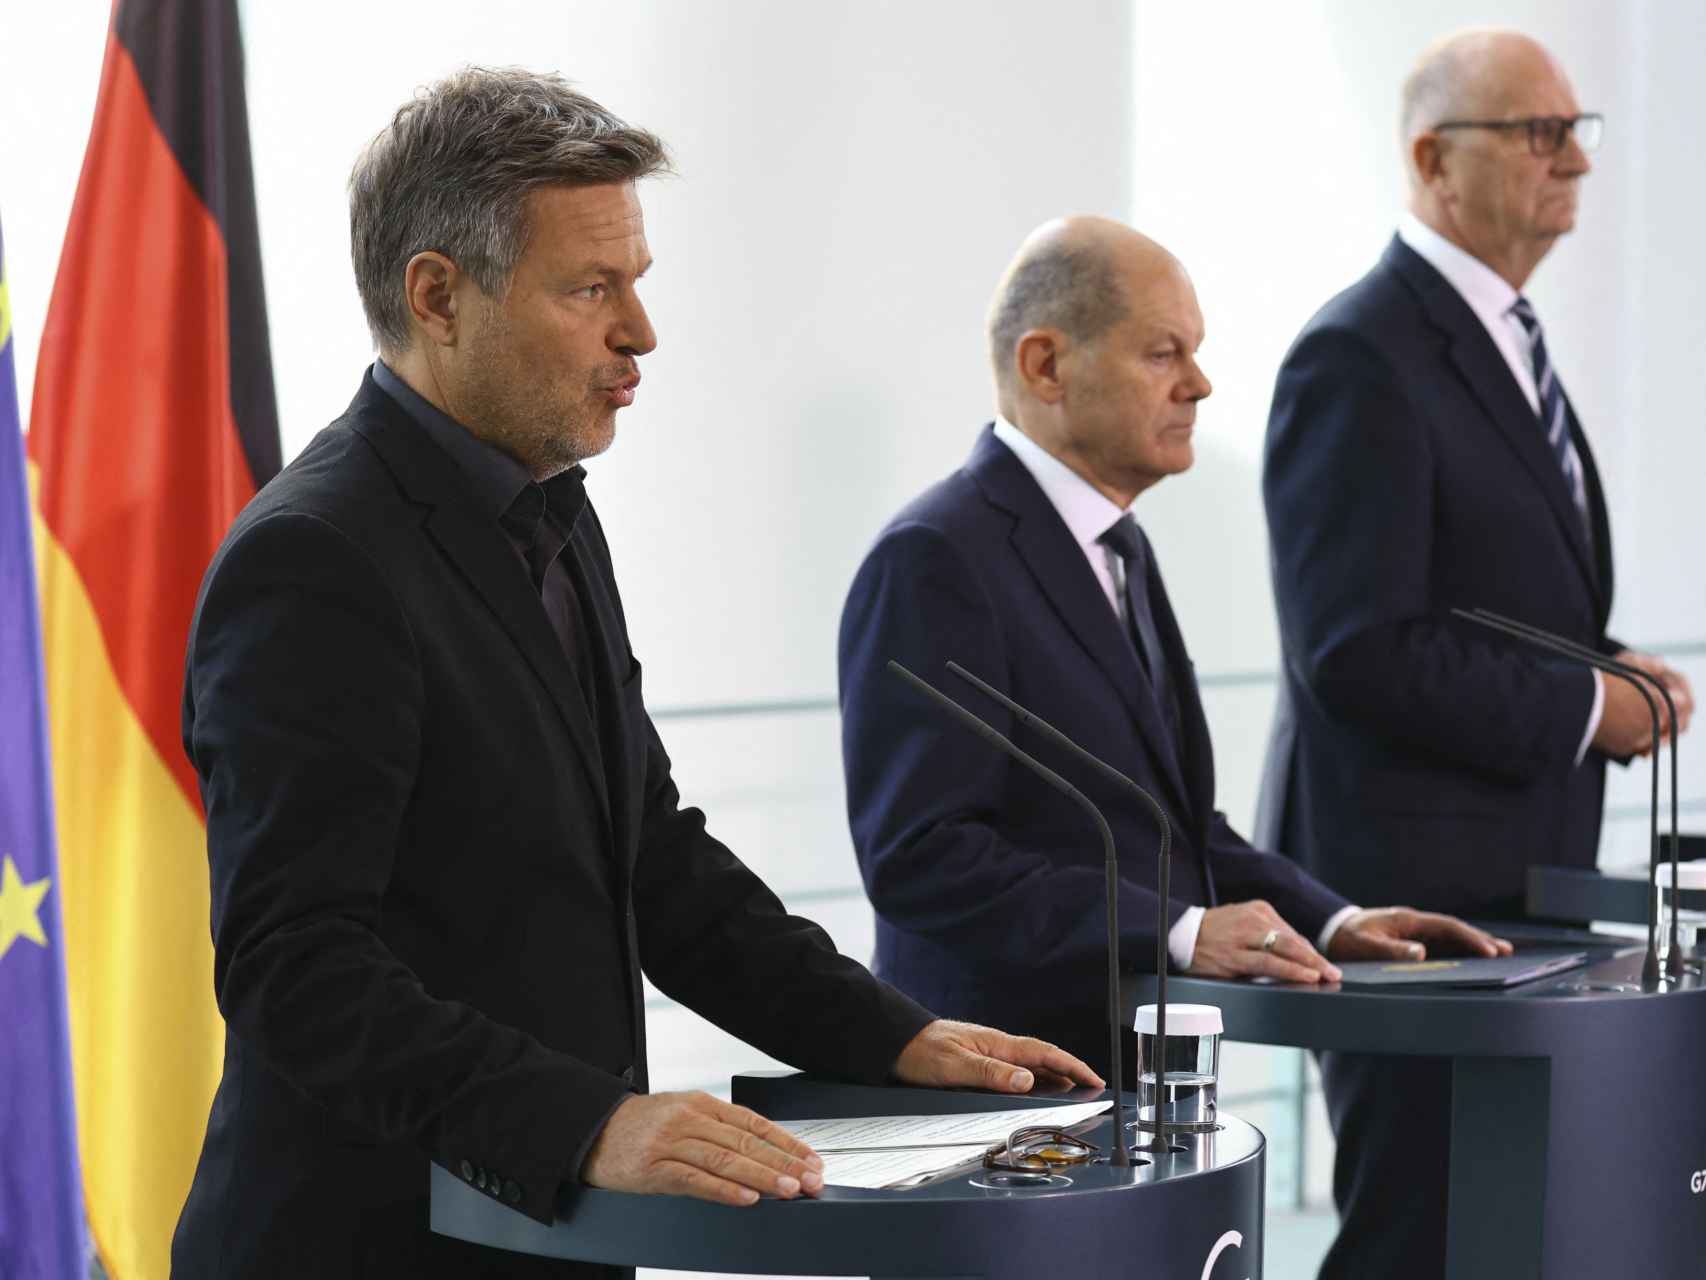 El ministro de Economía alemán, Robert Habeck, con Scholz y el primer ministro de Brandeburgo.